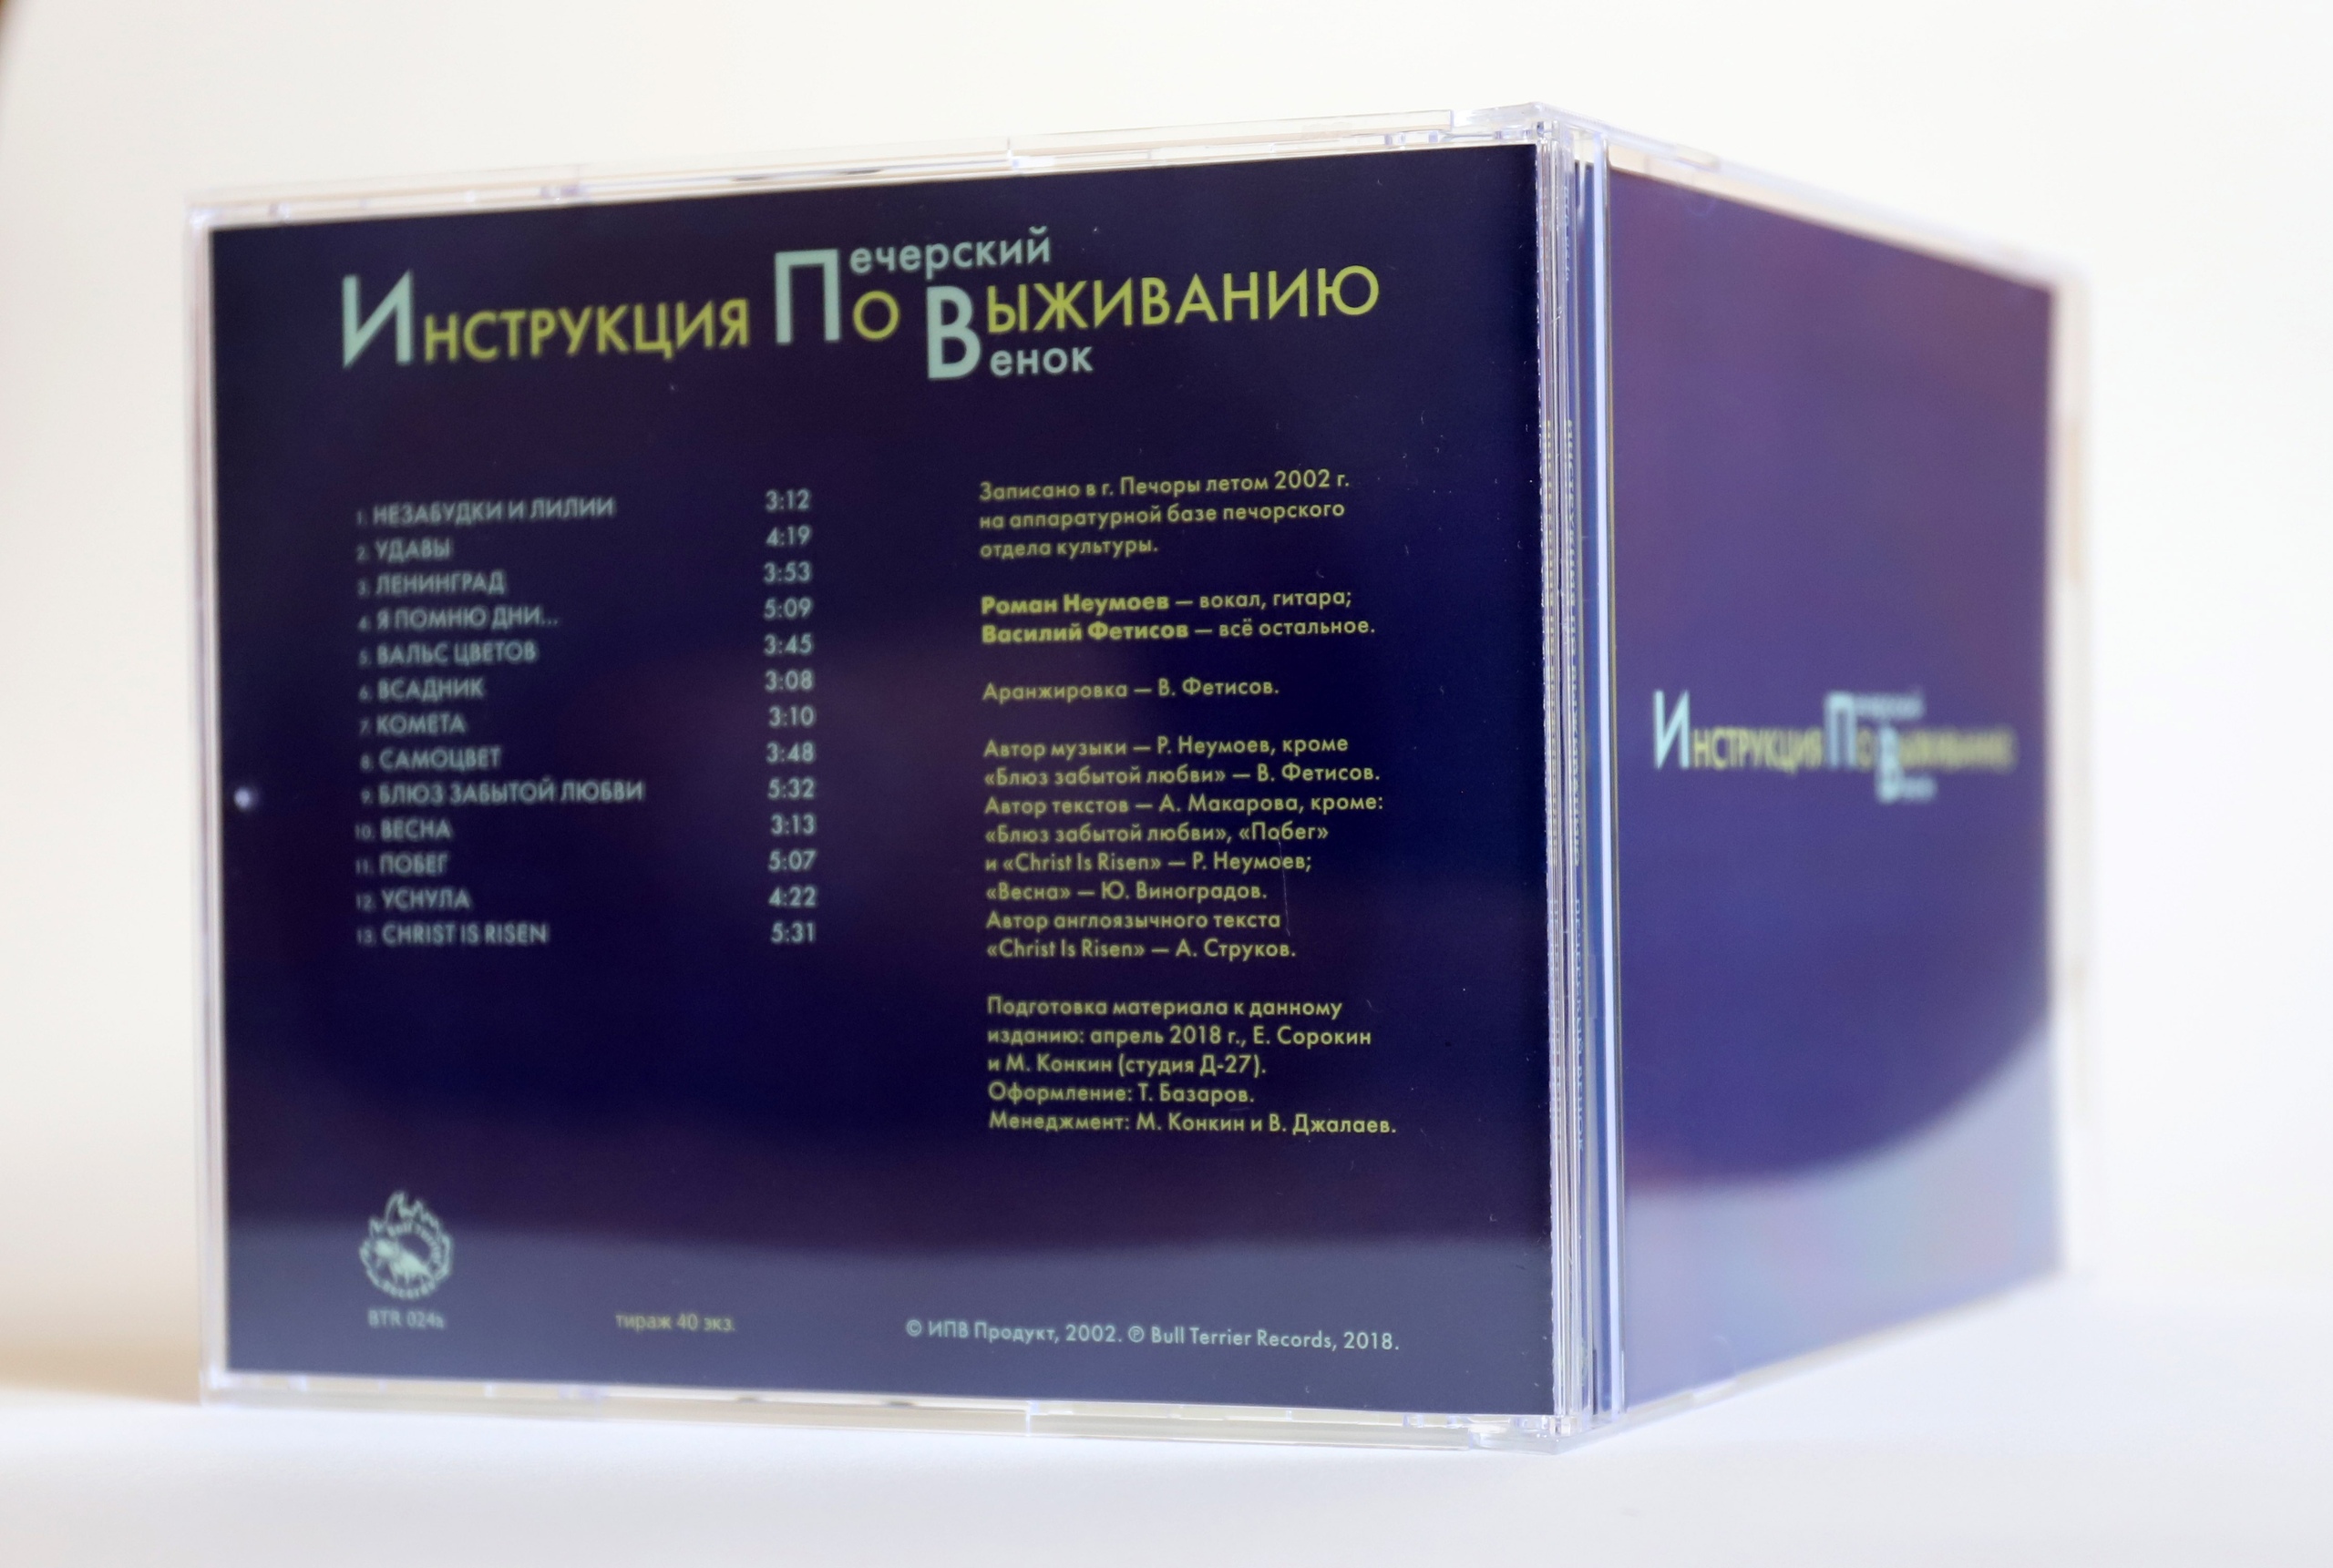 Инструкция по Выживанию — Печерский венок / Слава любви / Щёточки (3 CD, тестовые издания)